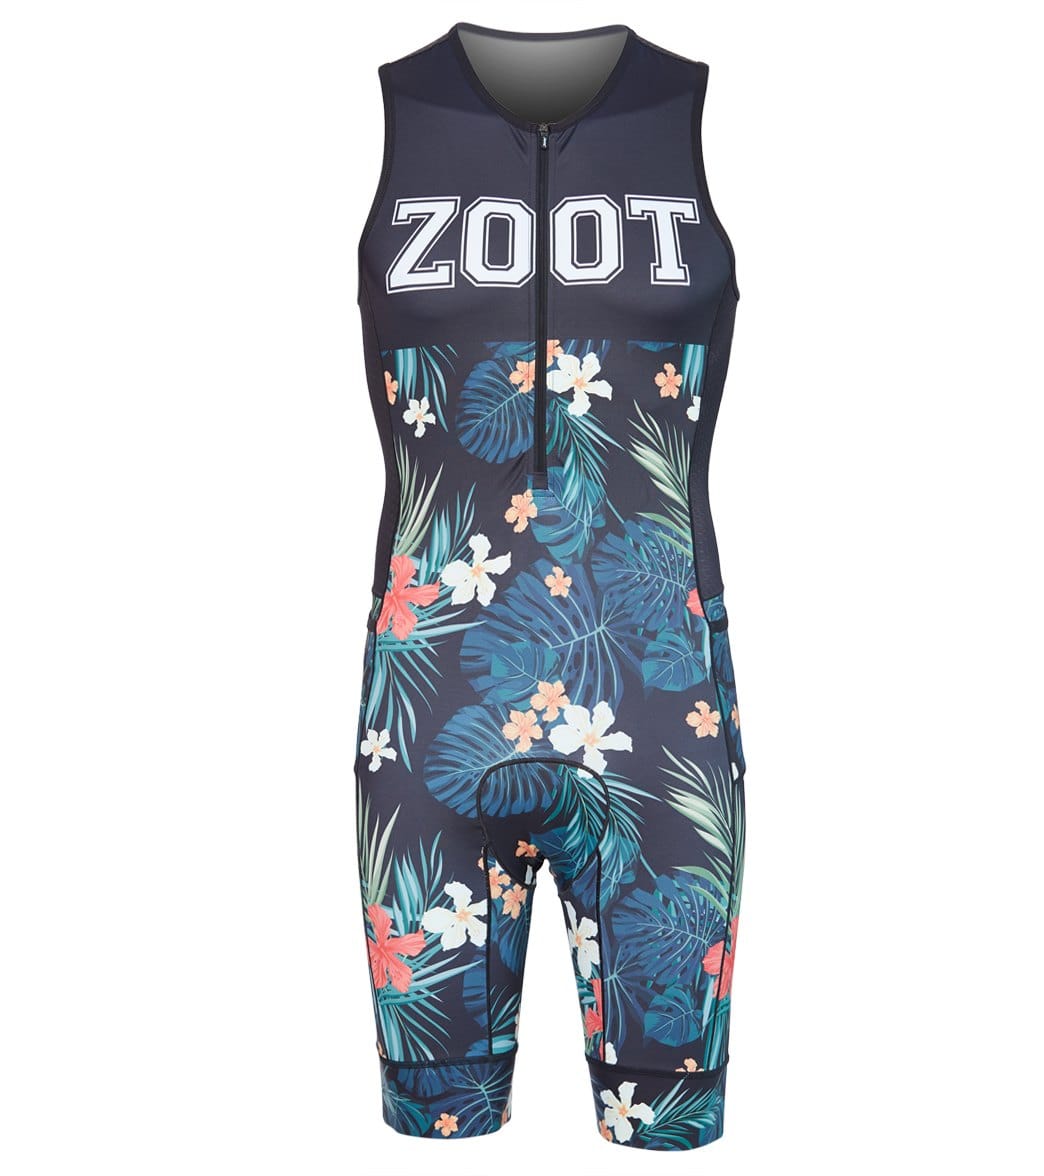 Zoot Men's Ltd Tri Racesuit - 83 19 Small - Swimoutlet.com